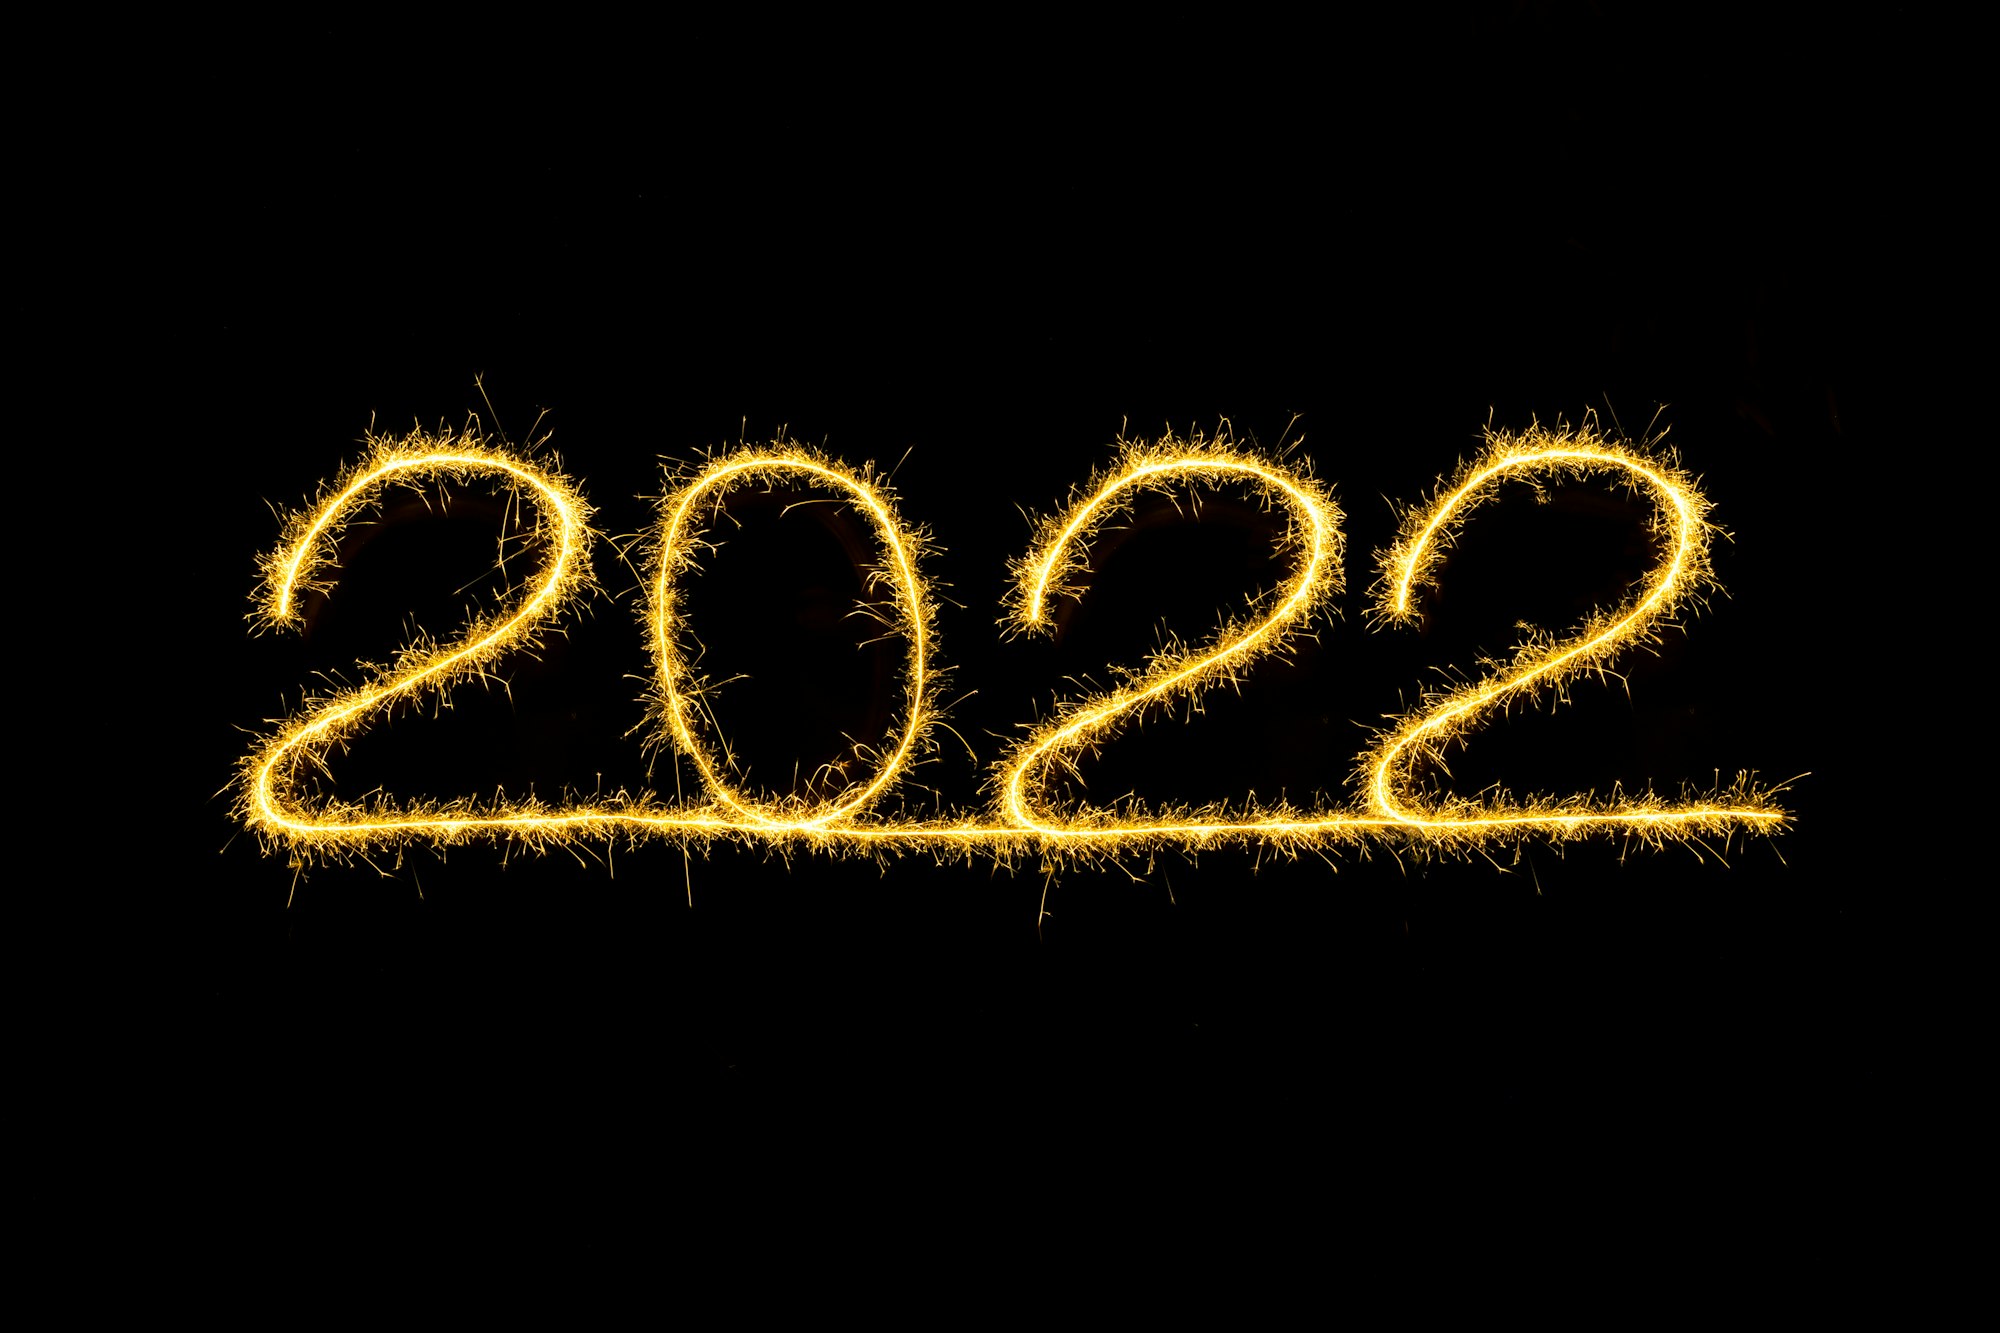 Catturados desea un Feliz Año 2022 ¡¿Y tú...? ¿Qué aprendiste hoy?!